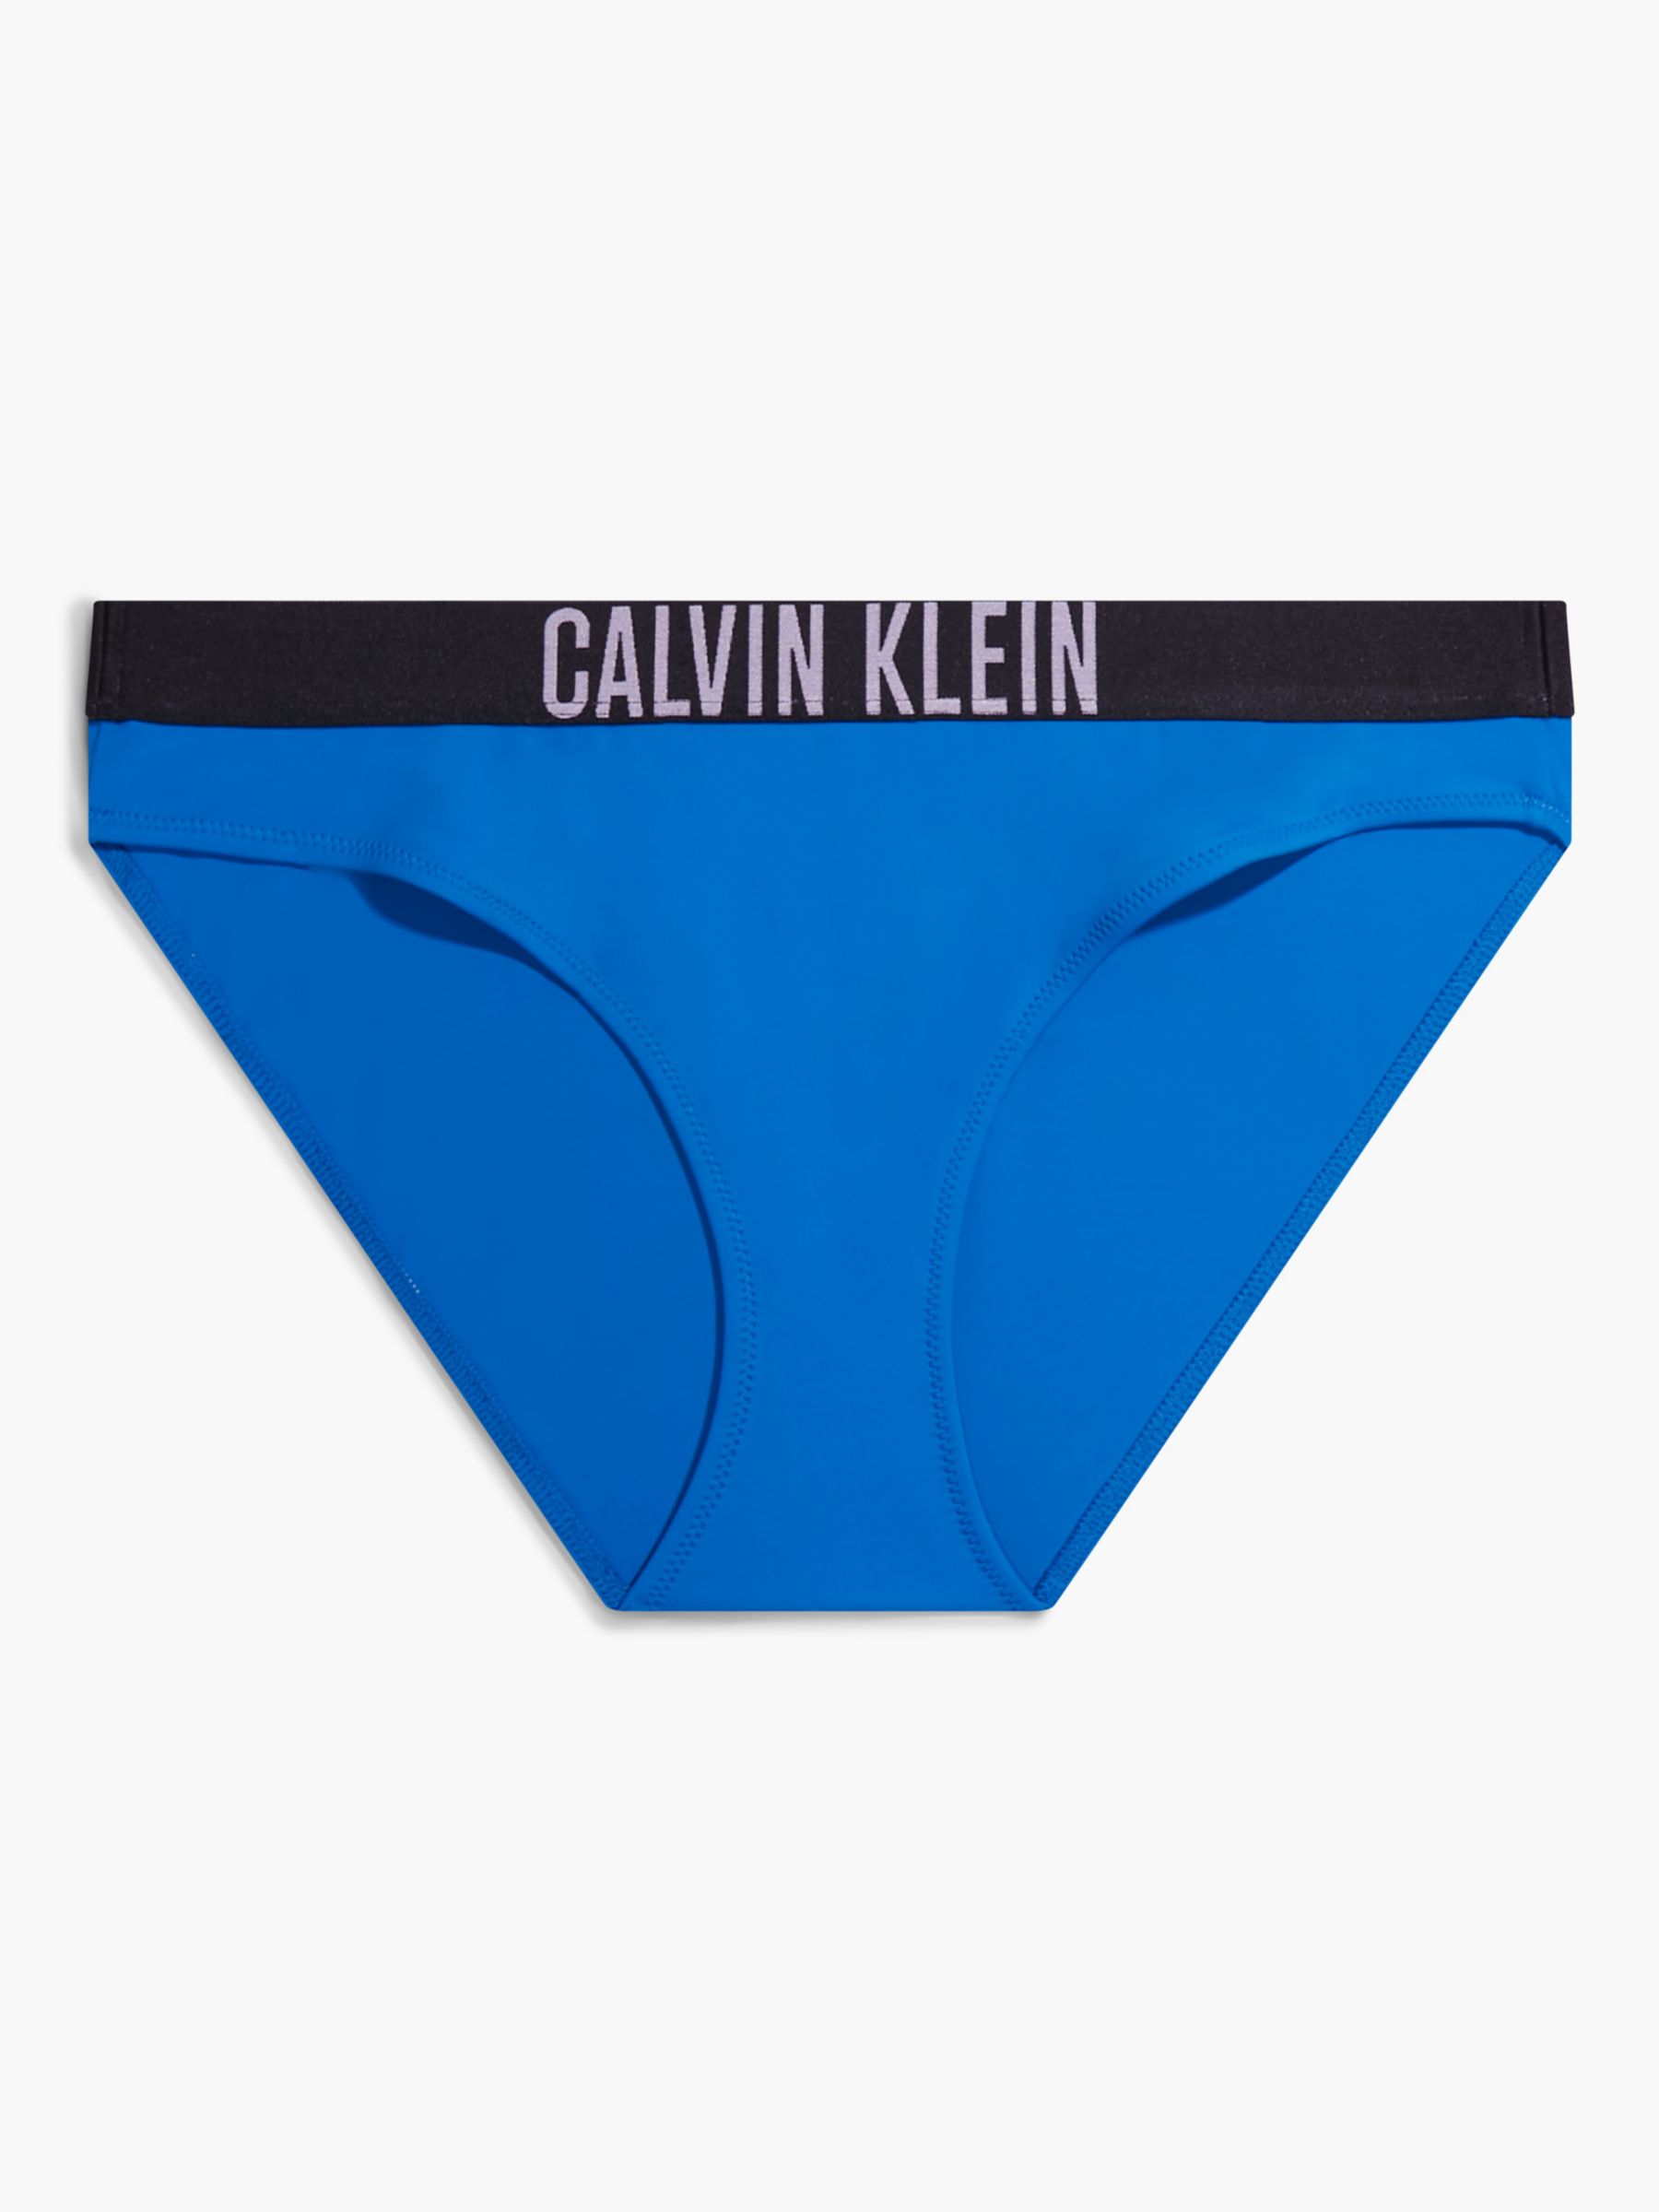 Calvin Klein Intense Power Classic Bikini Bottoms, Dynamic Blue, L